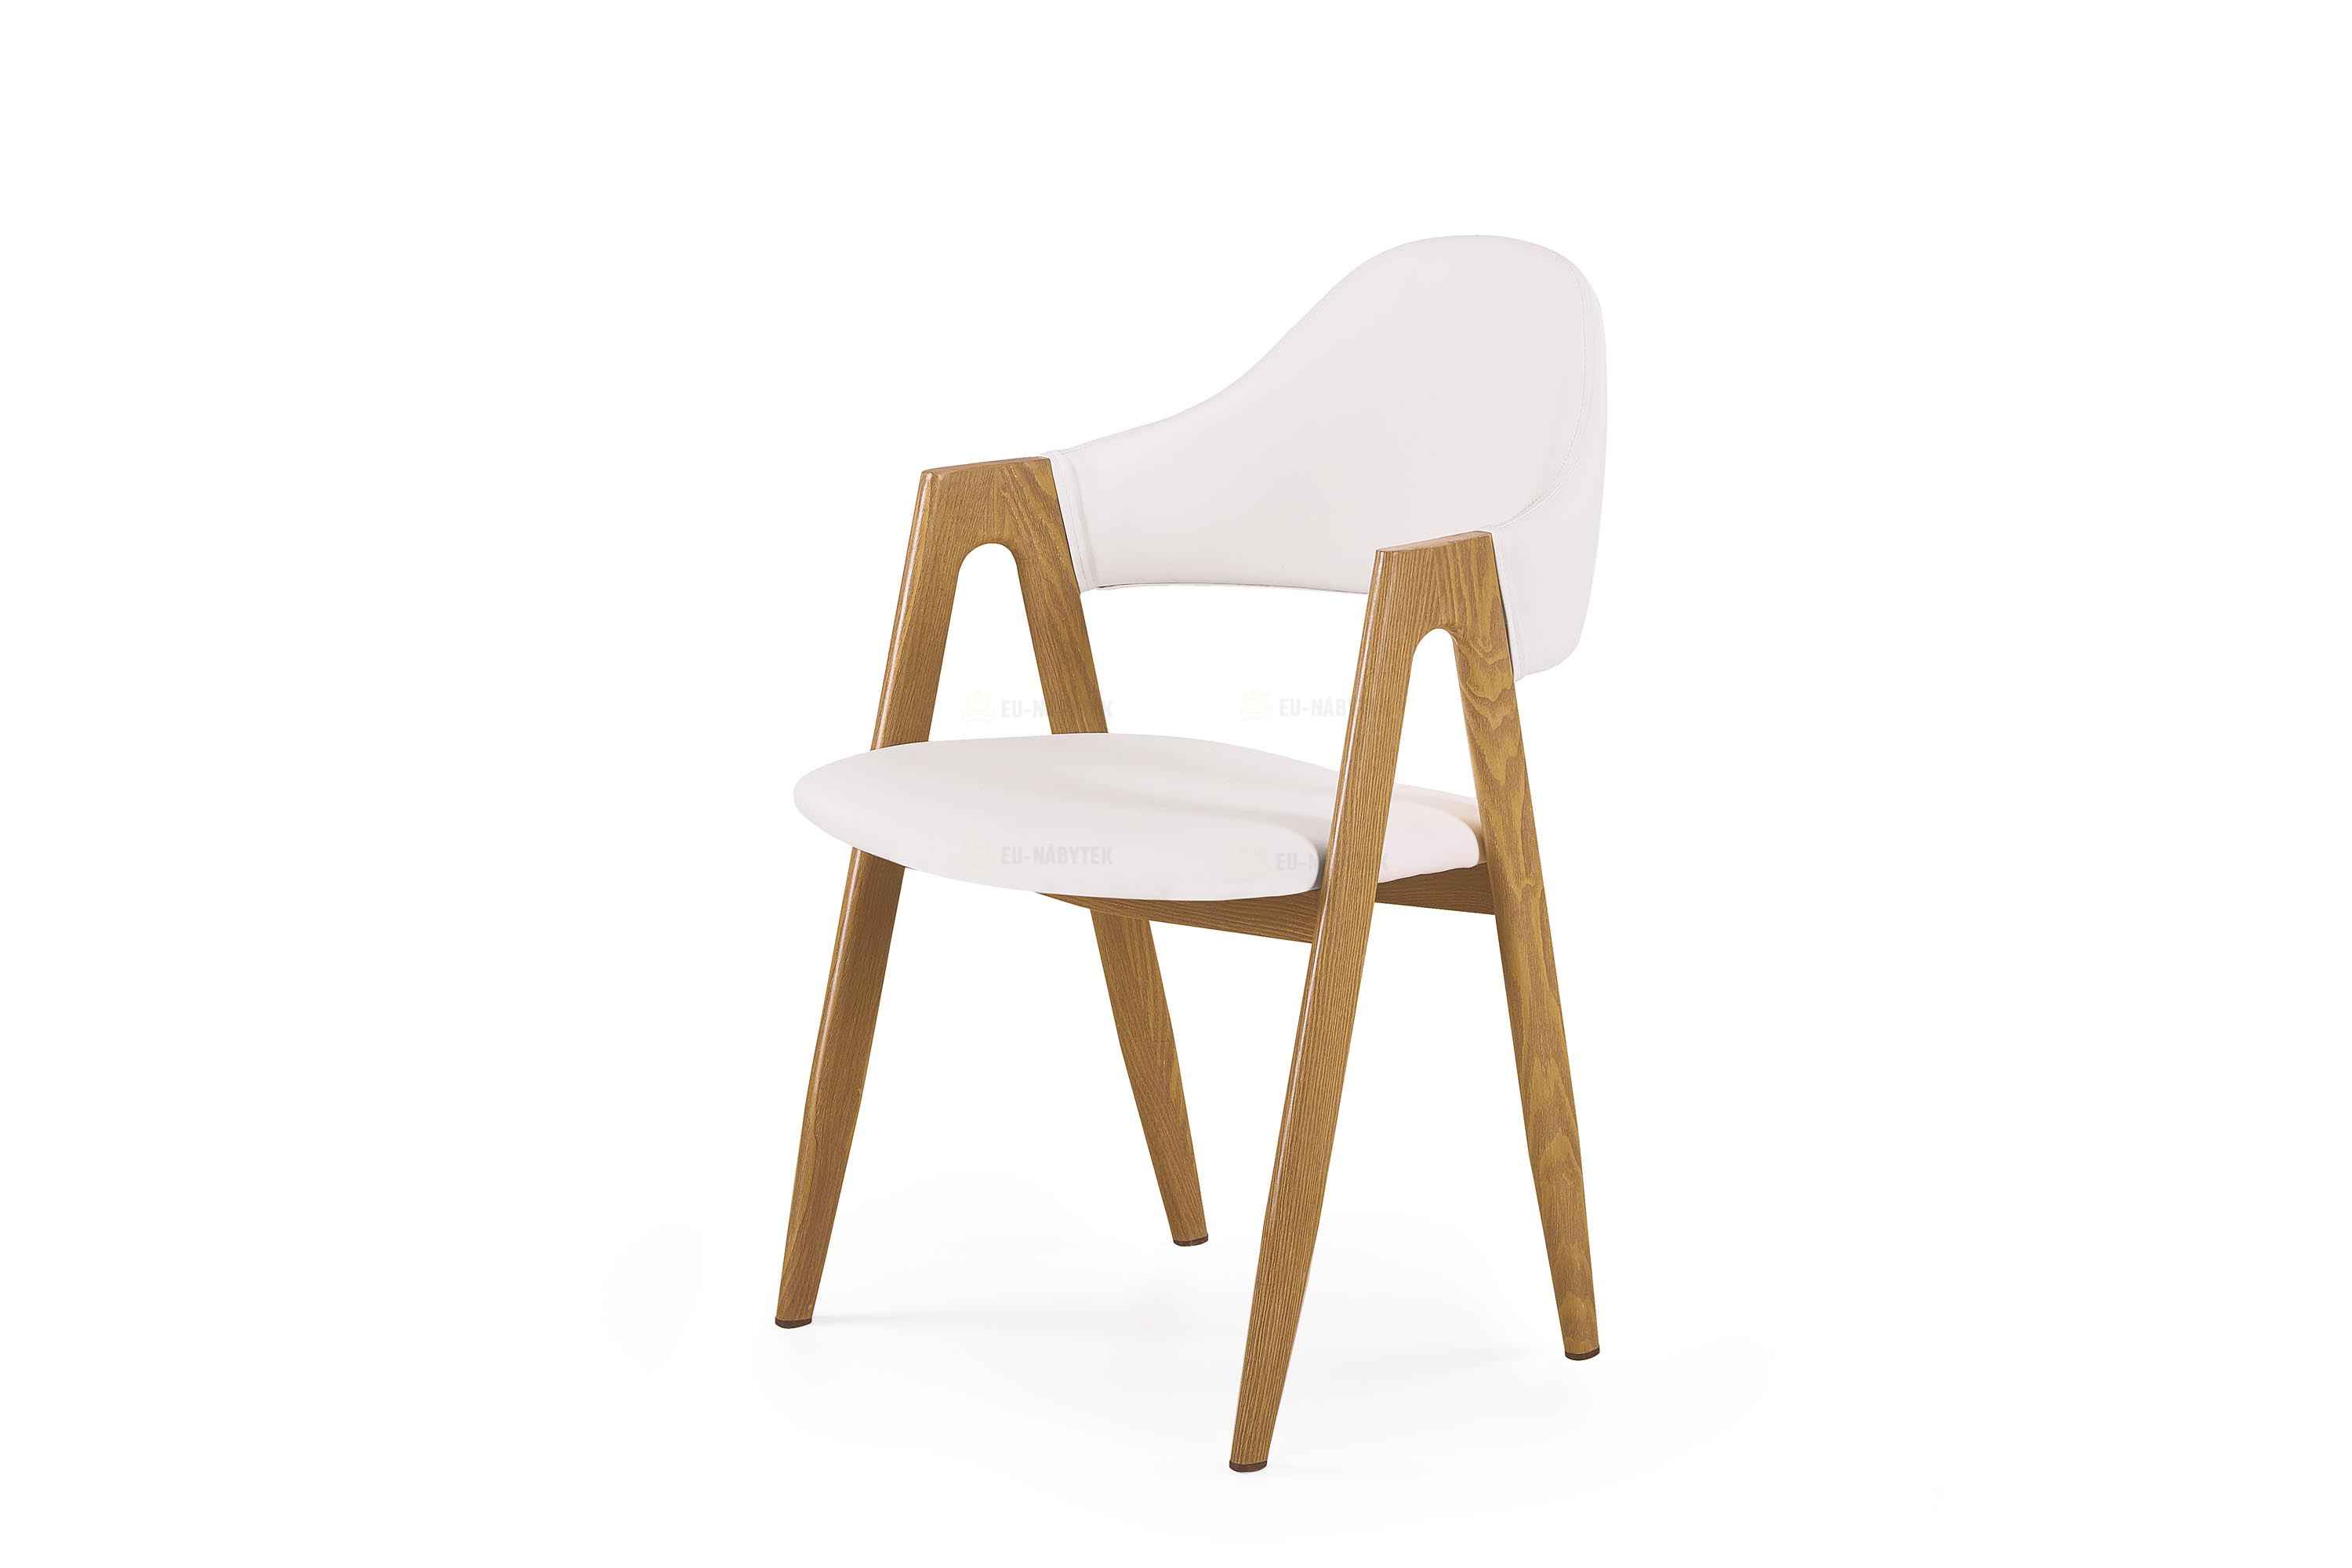 Jídelní židle K247 bílá / dub medový